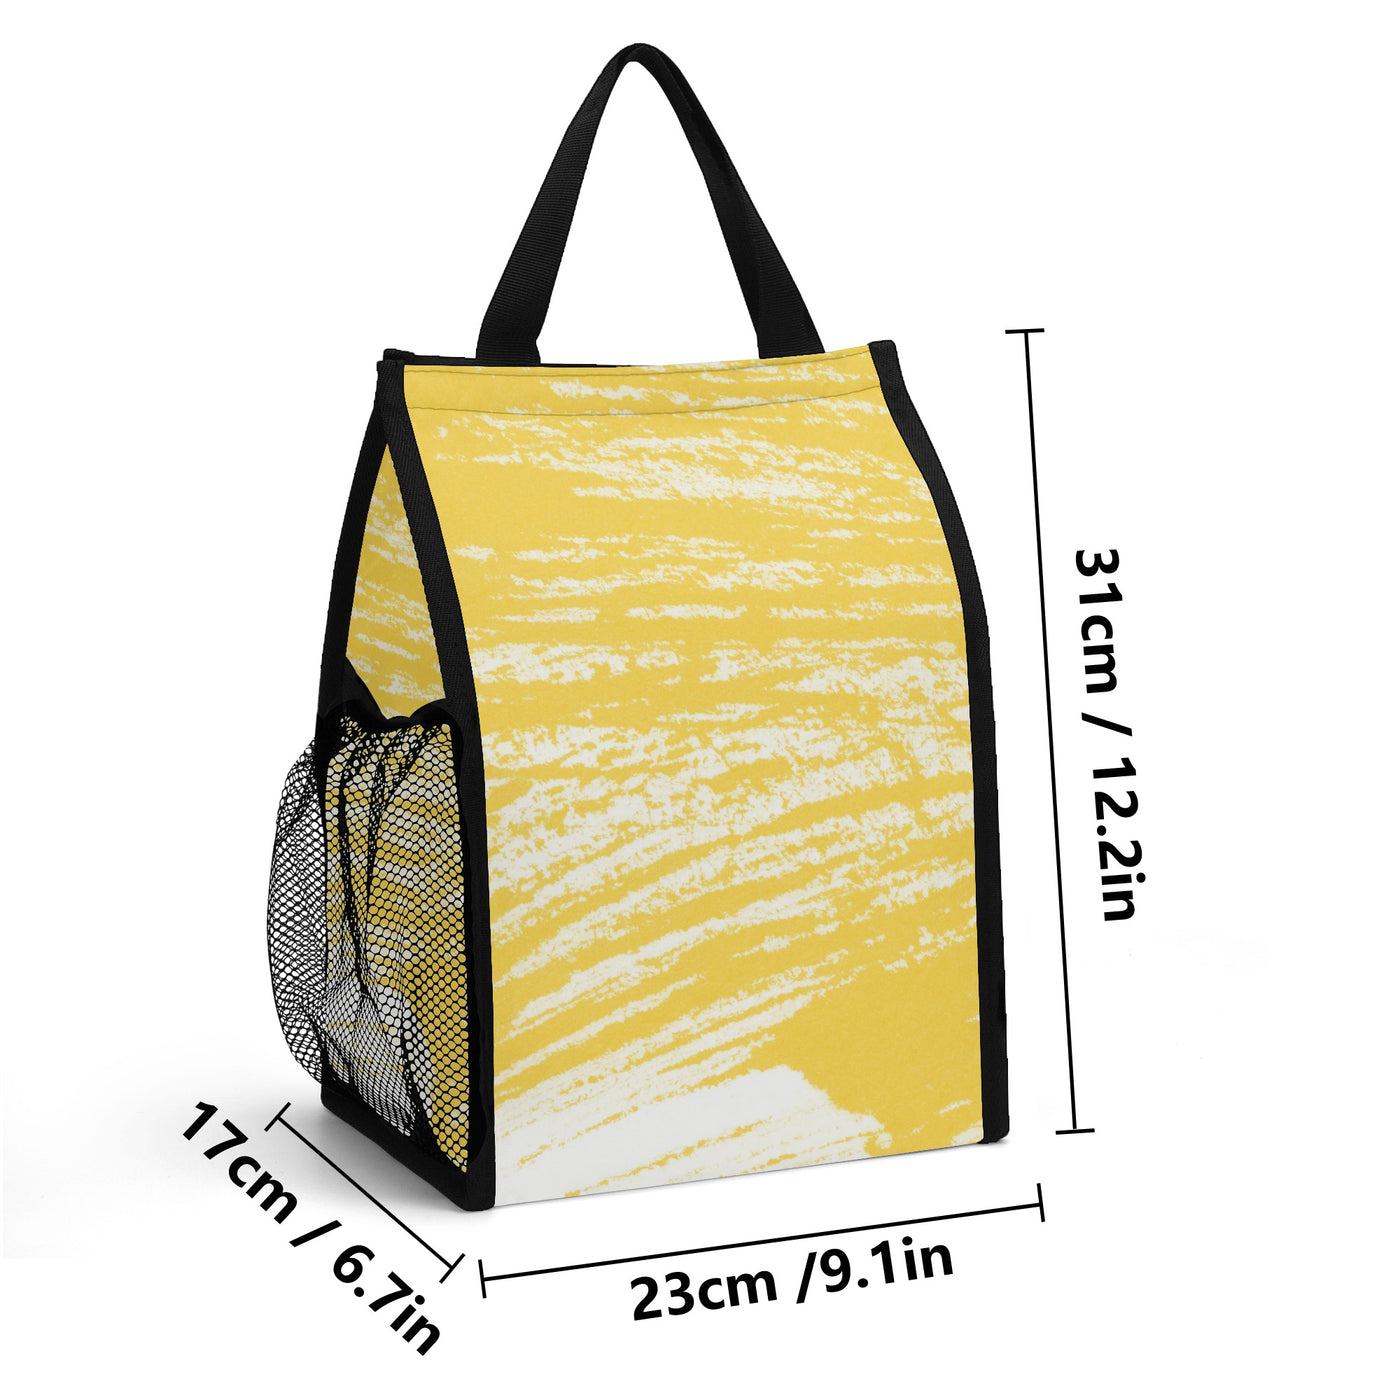 Folding Pocket Type Lunch Bag (45 days pre-order)